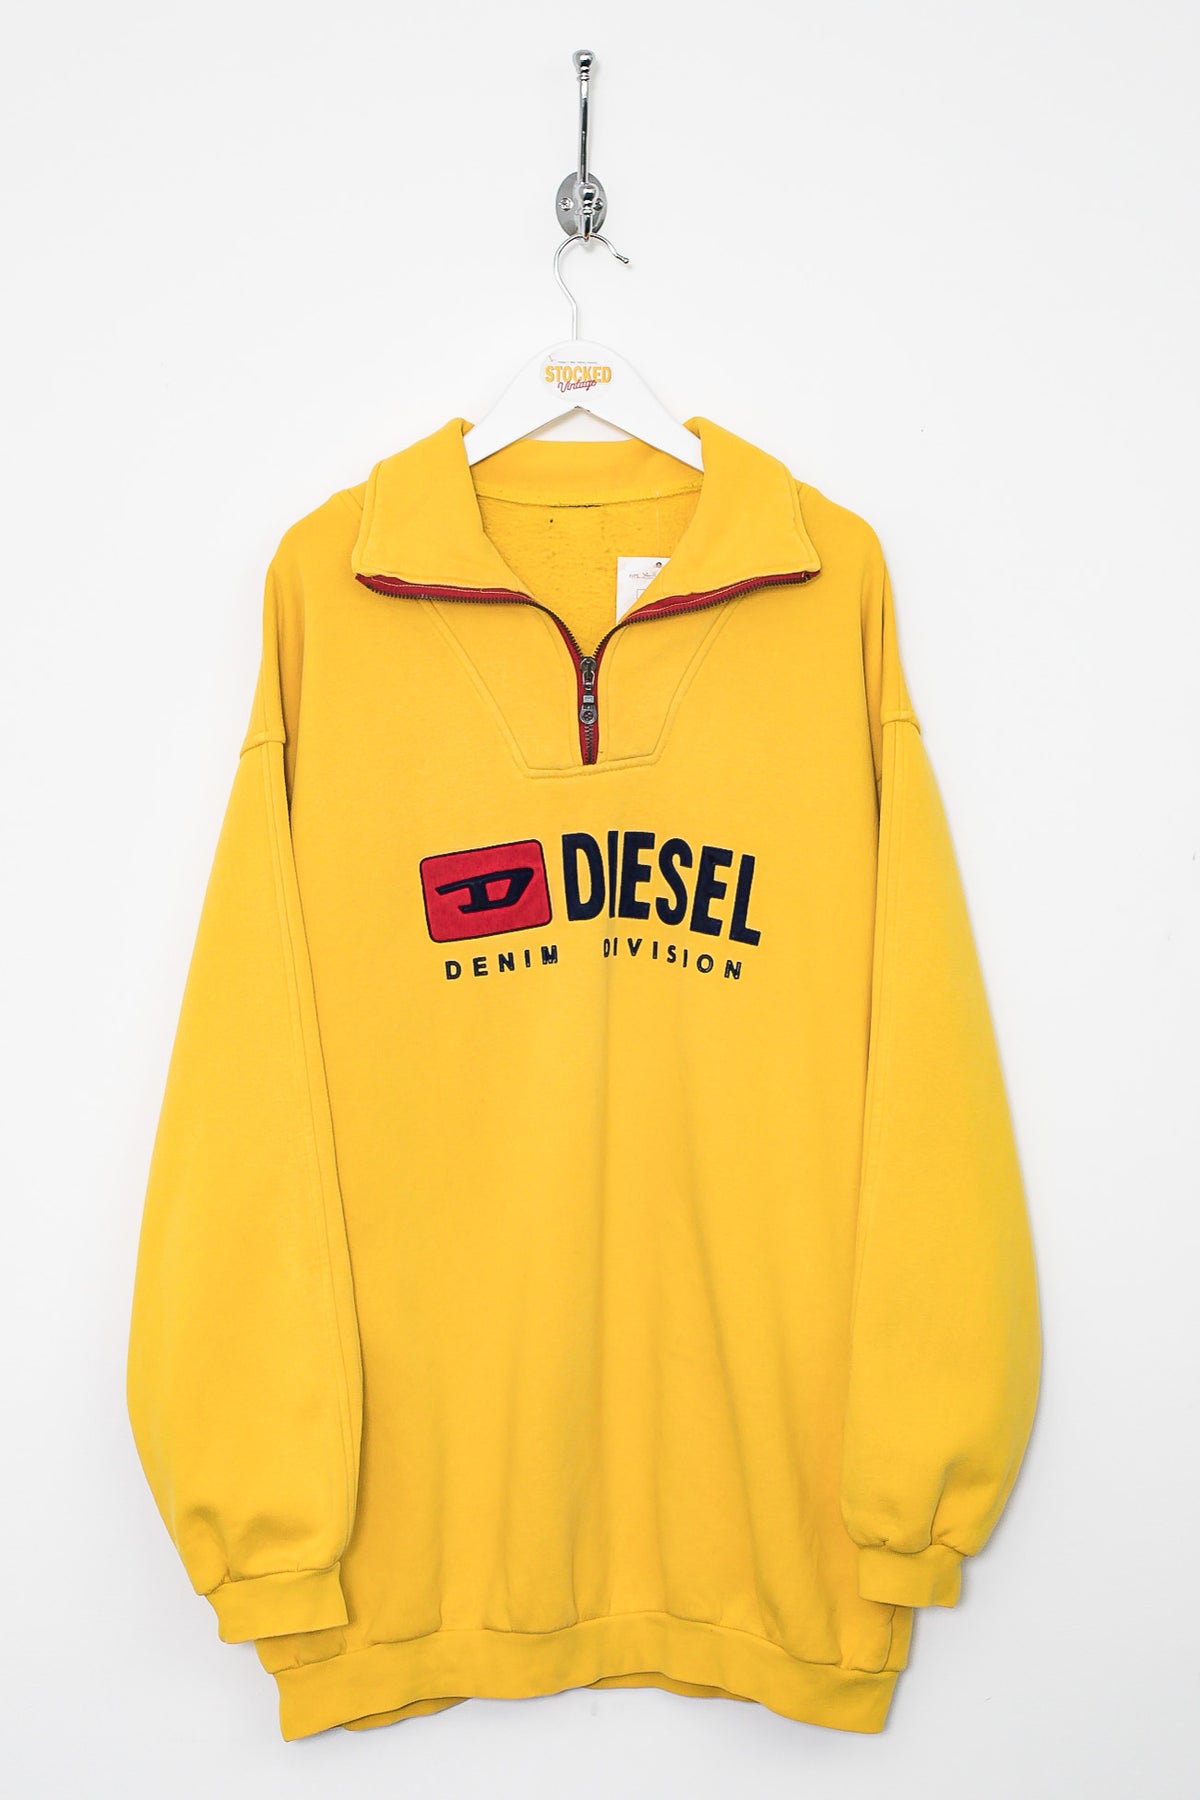 00s Diesel 1/4 Zip Sweatshirt (XL)